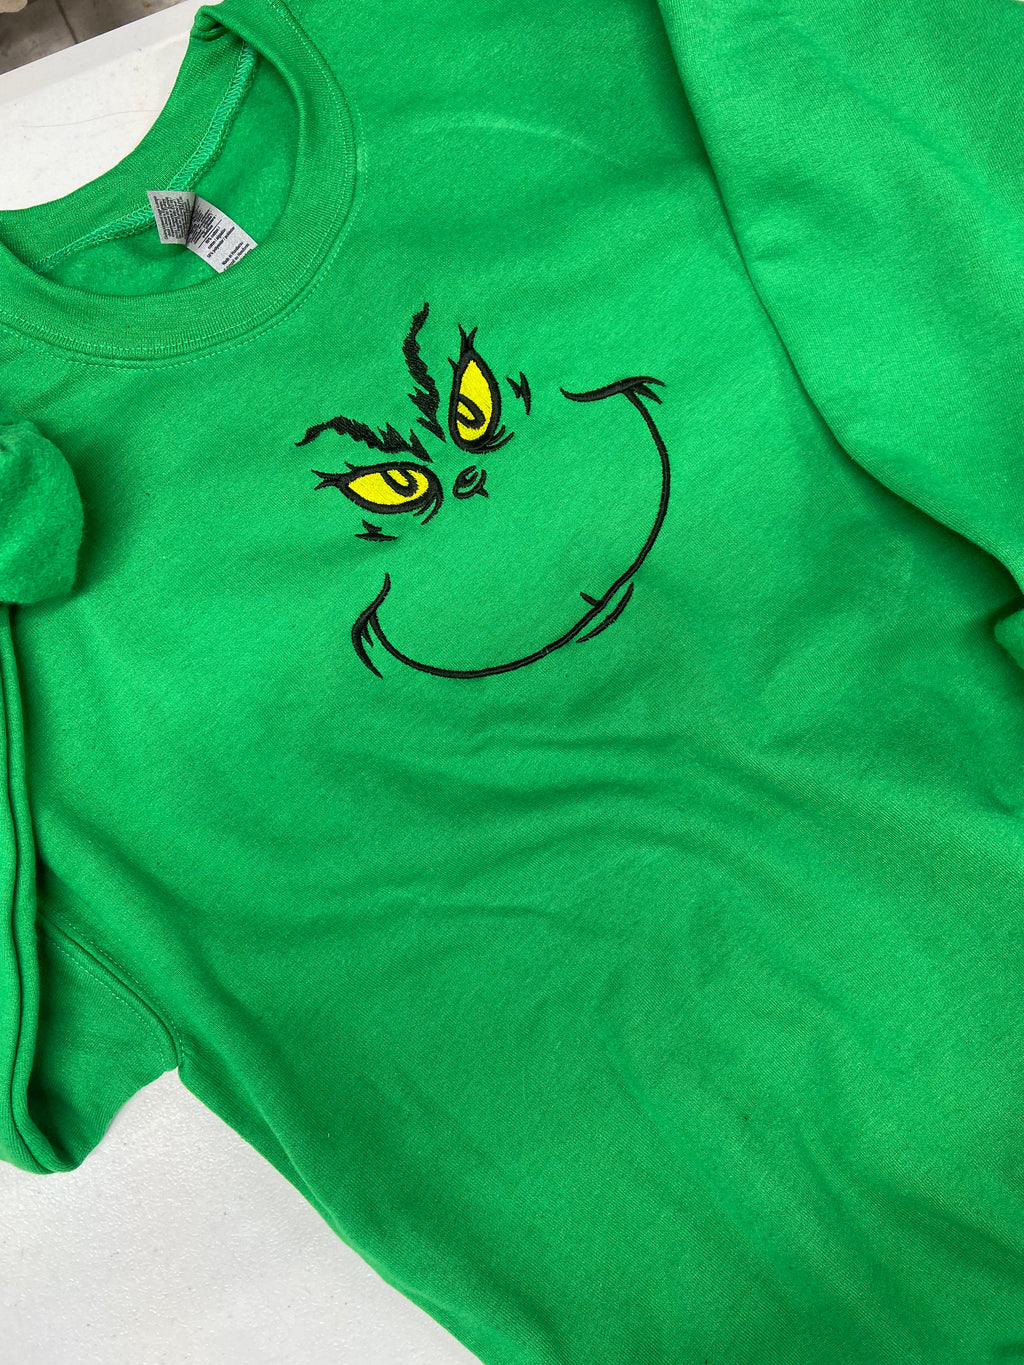 Mr. Green man embroidered sweatshirt